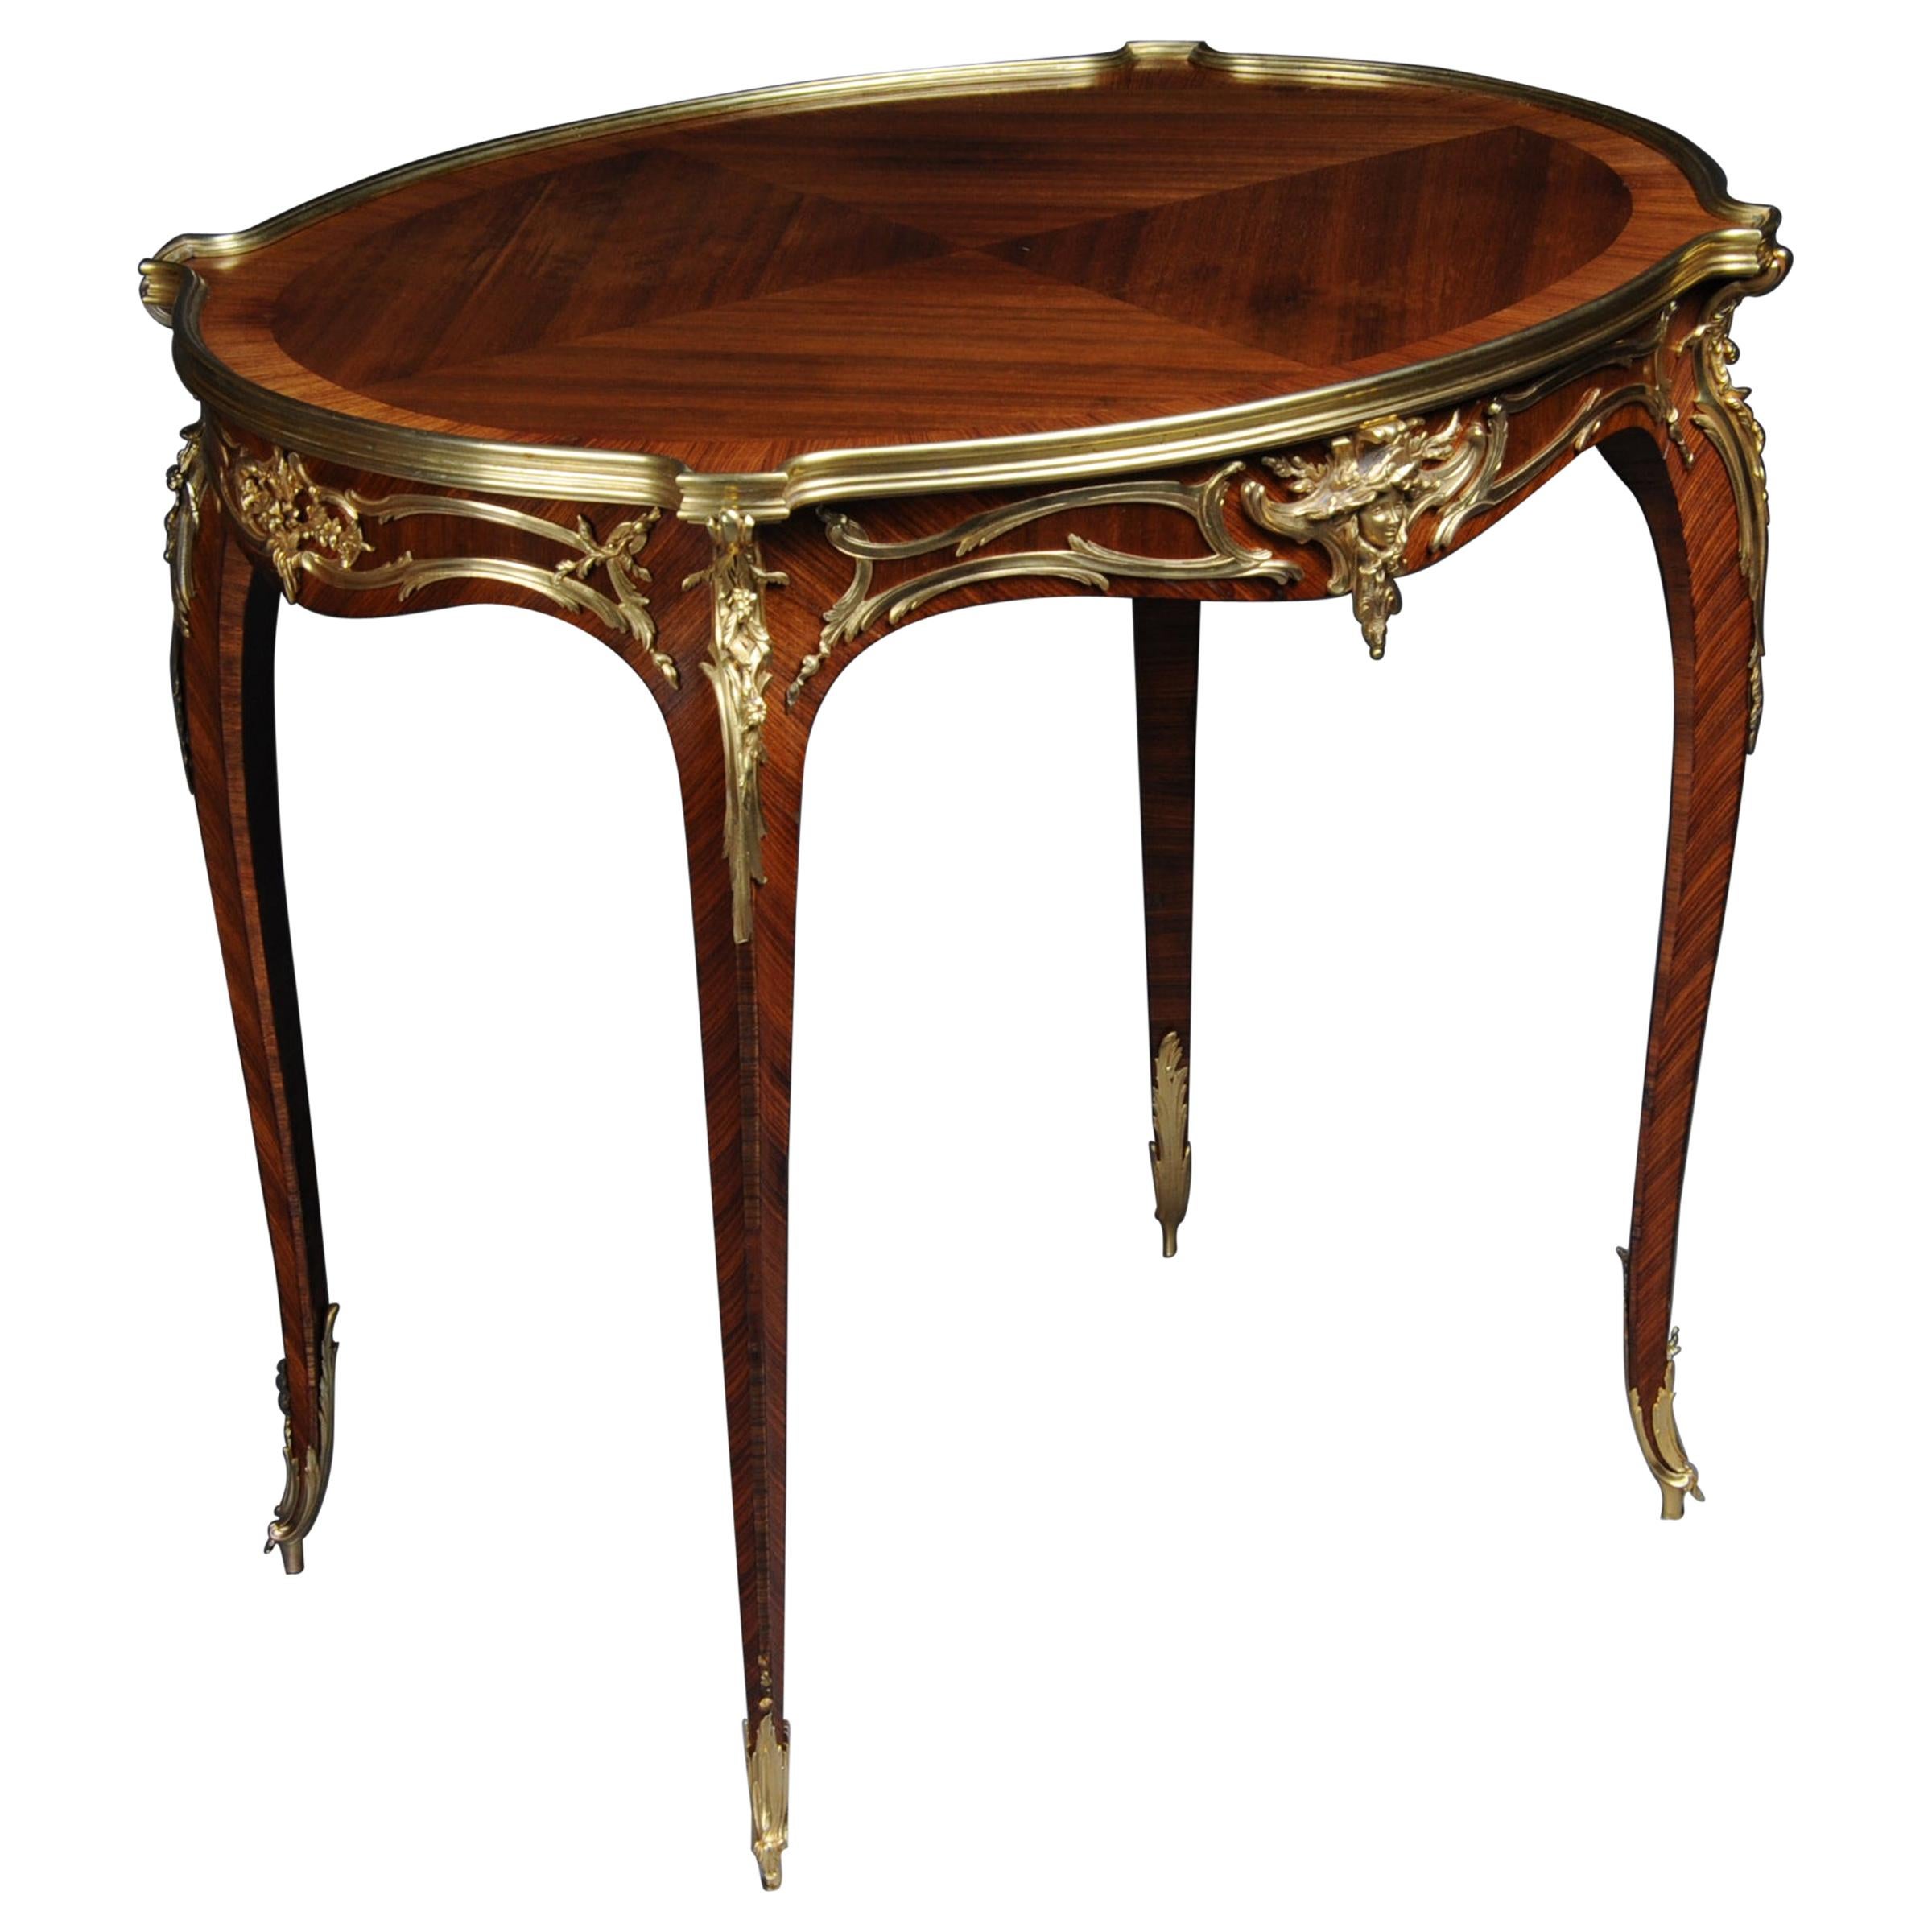 Table d'appoint royale du XIXe siècle Francois Linke, Paris. Signé